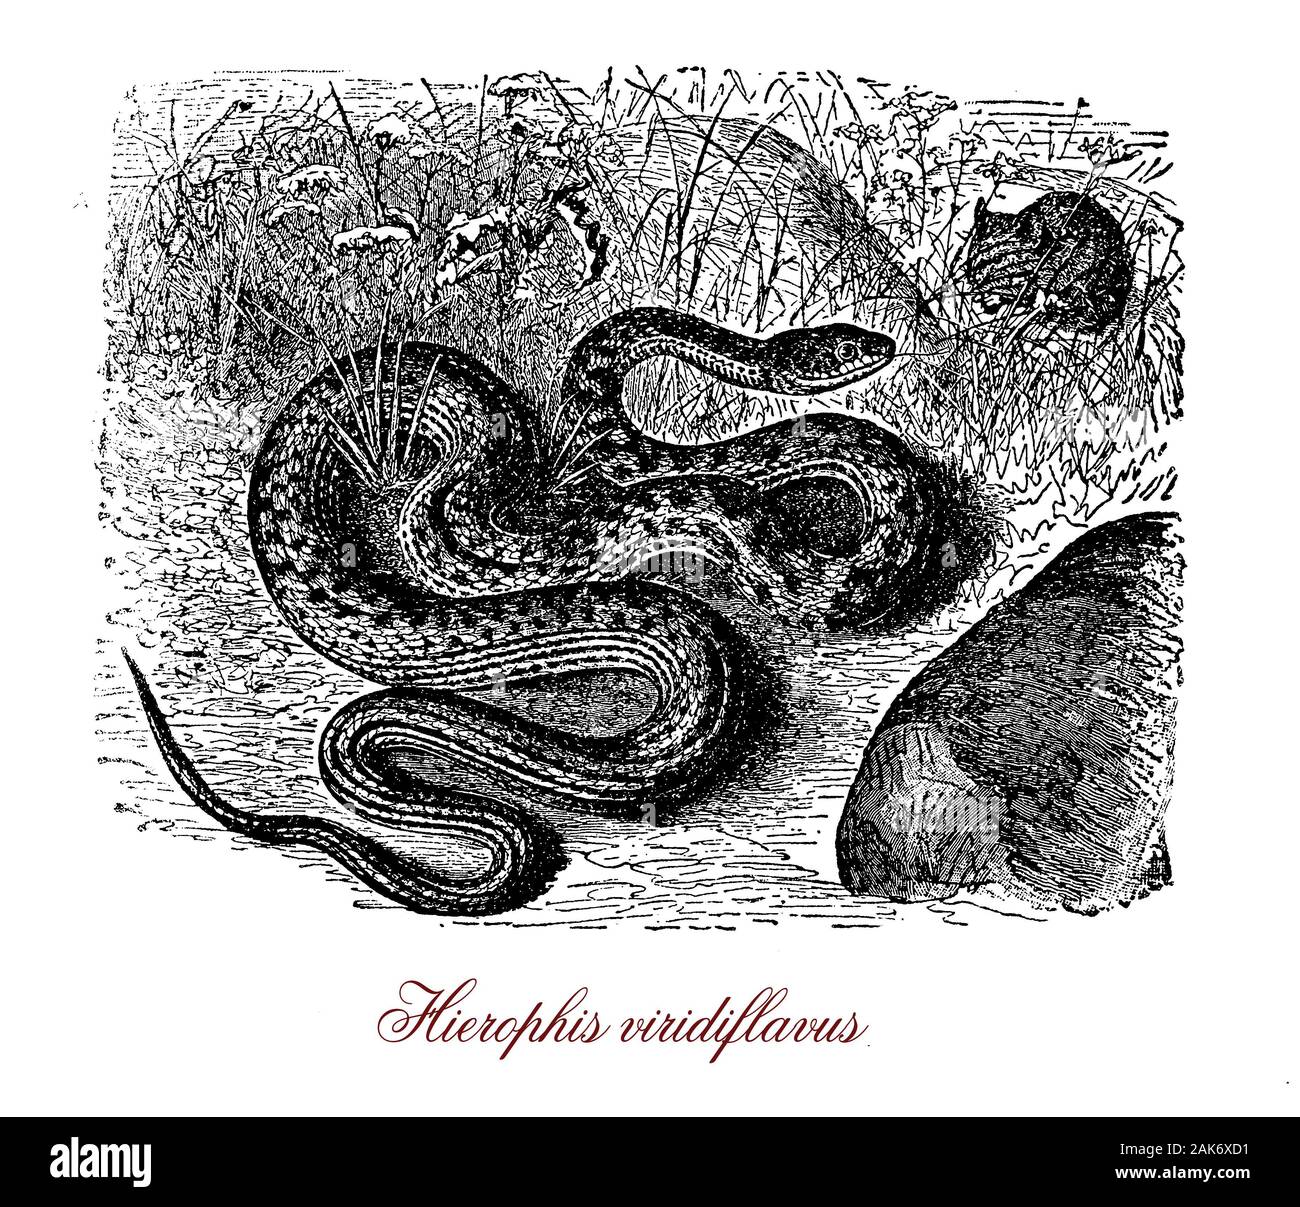 Whip Green snake est un très non venimeux serpent méditerranéen commun, il peut atteindre une longueur totale d'environ 150cm et se nourrit de lézards, grenouilles et des œufs d'oiseaux Banque D'Images